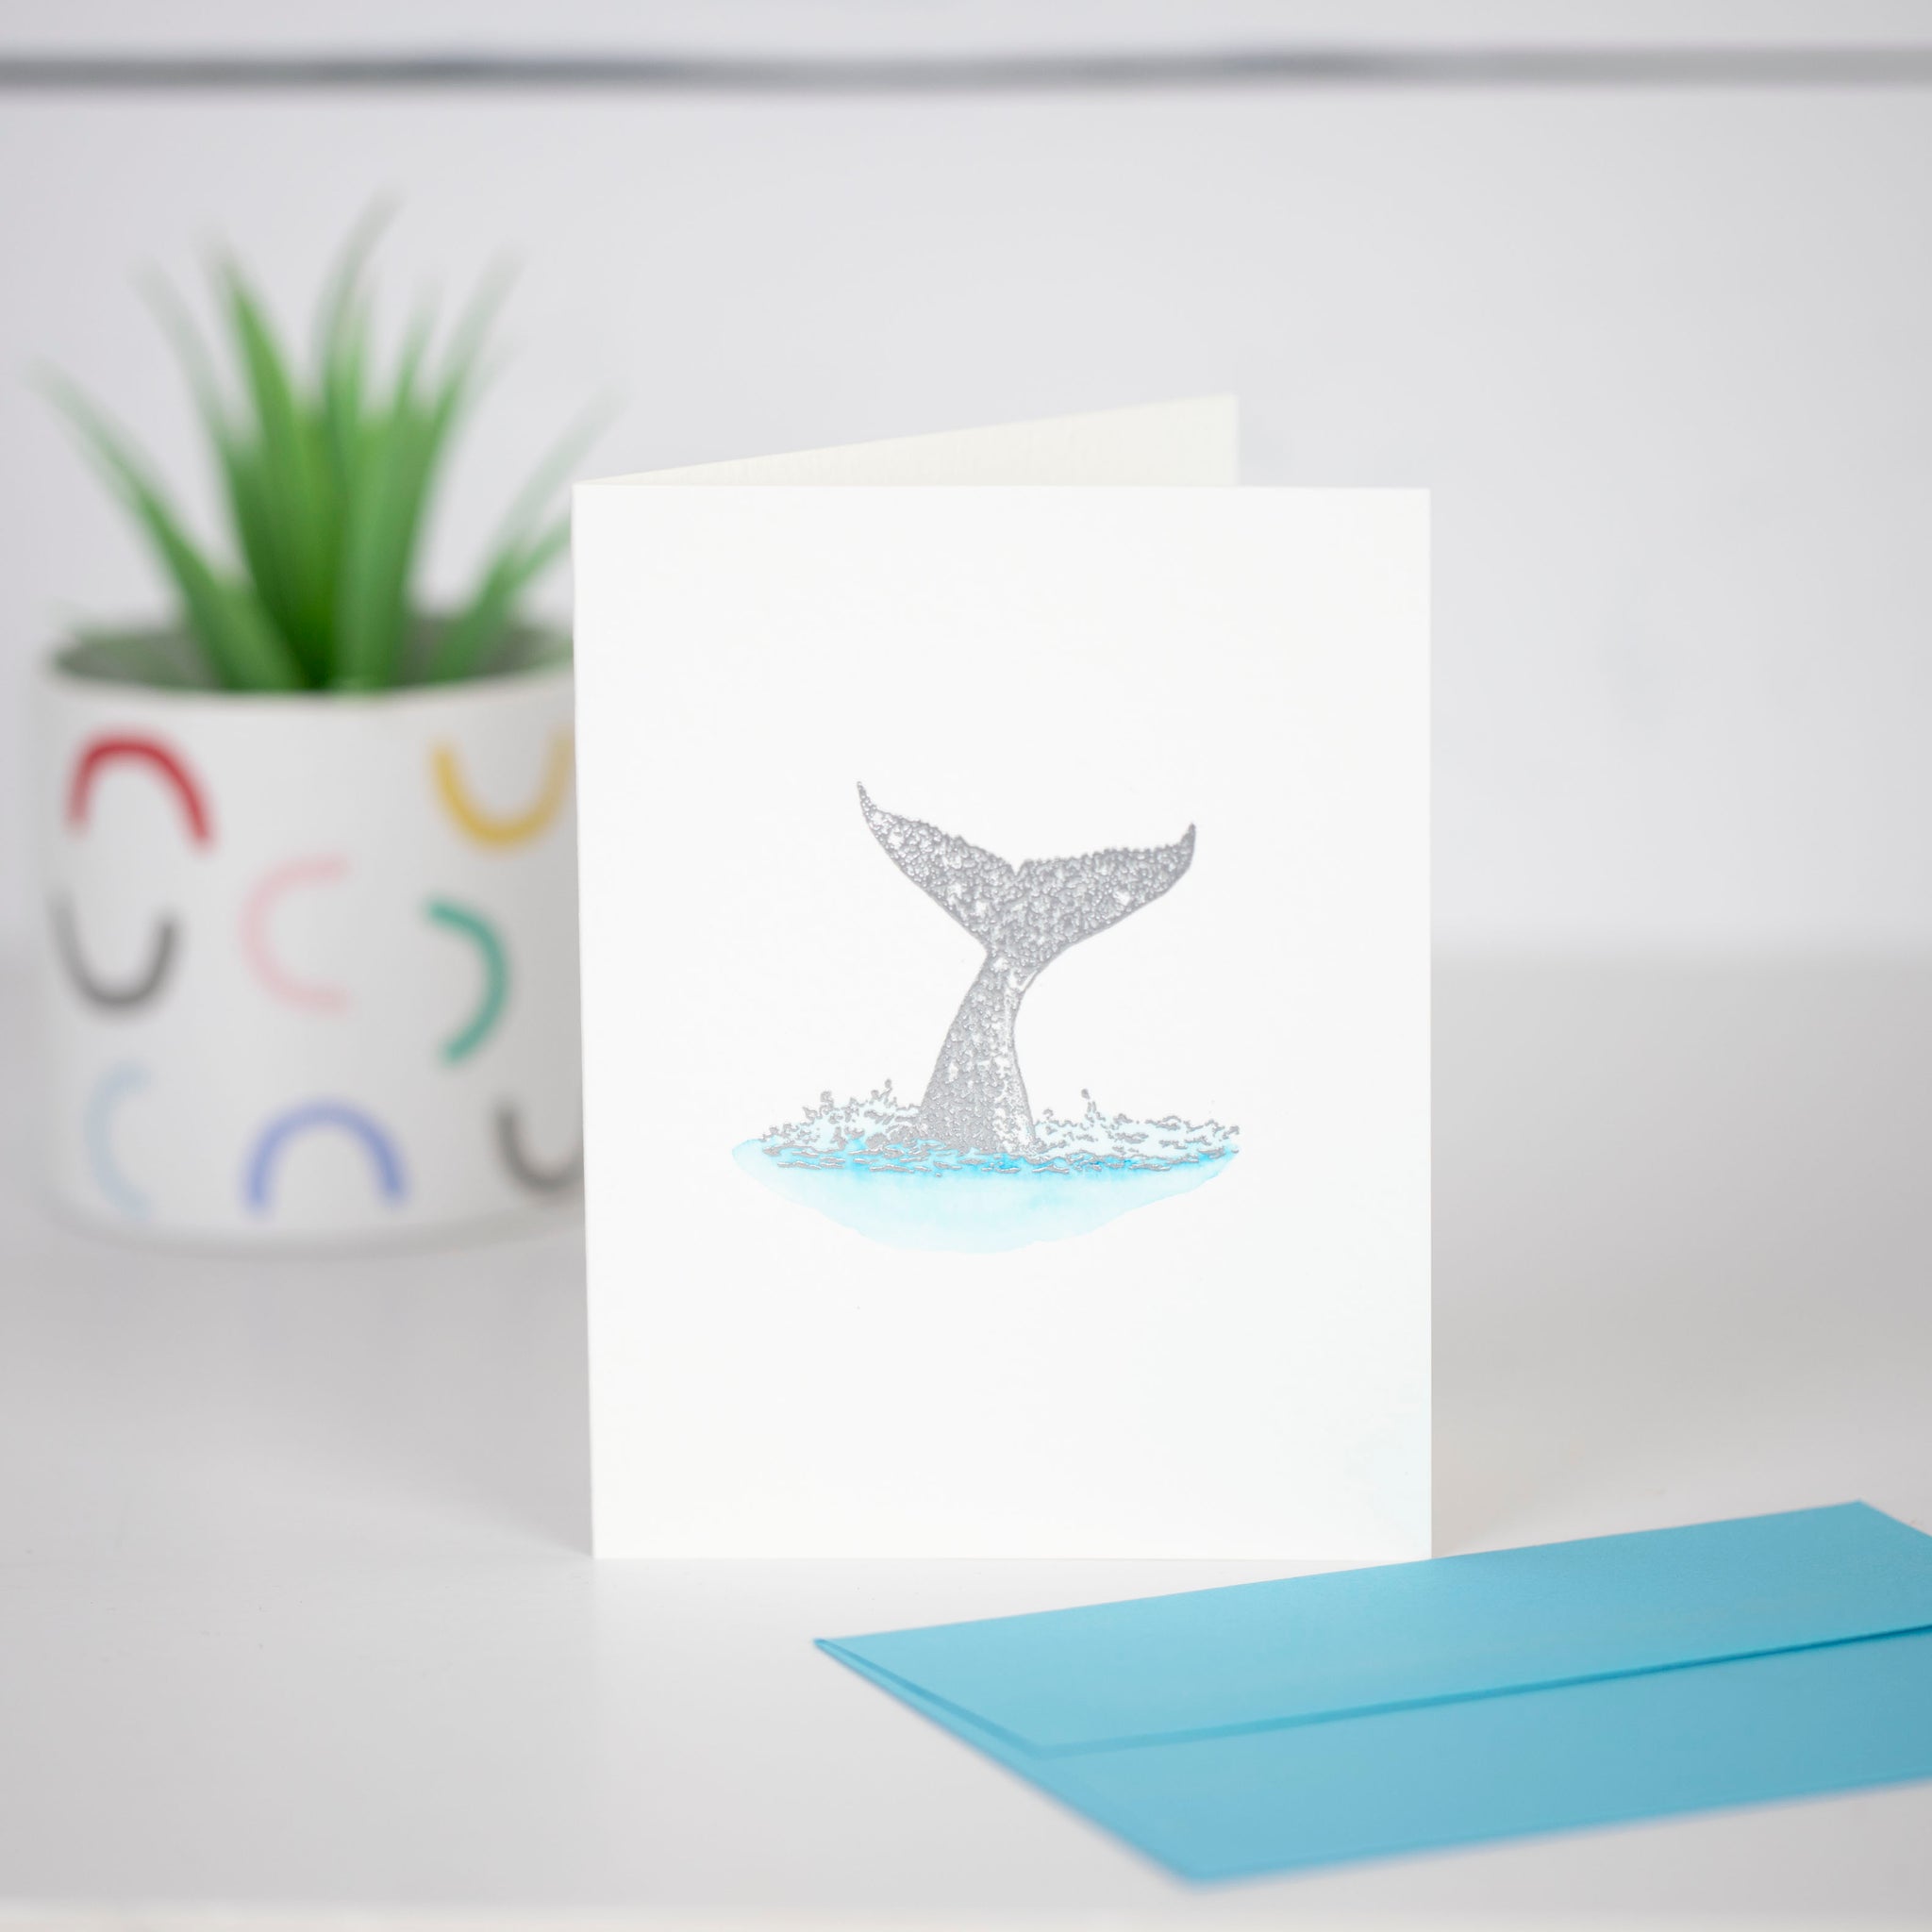 Whale Tail Card Metallic Silver Card